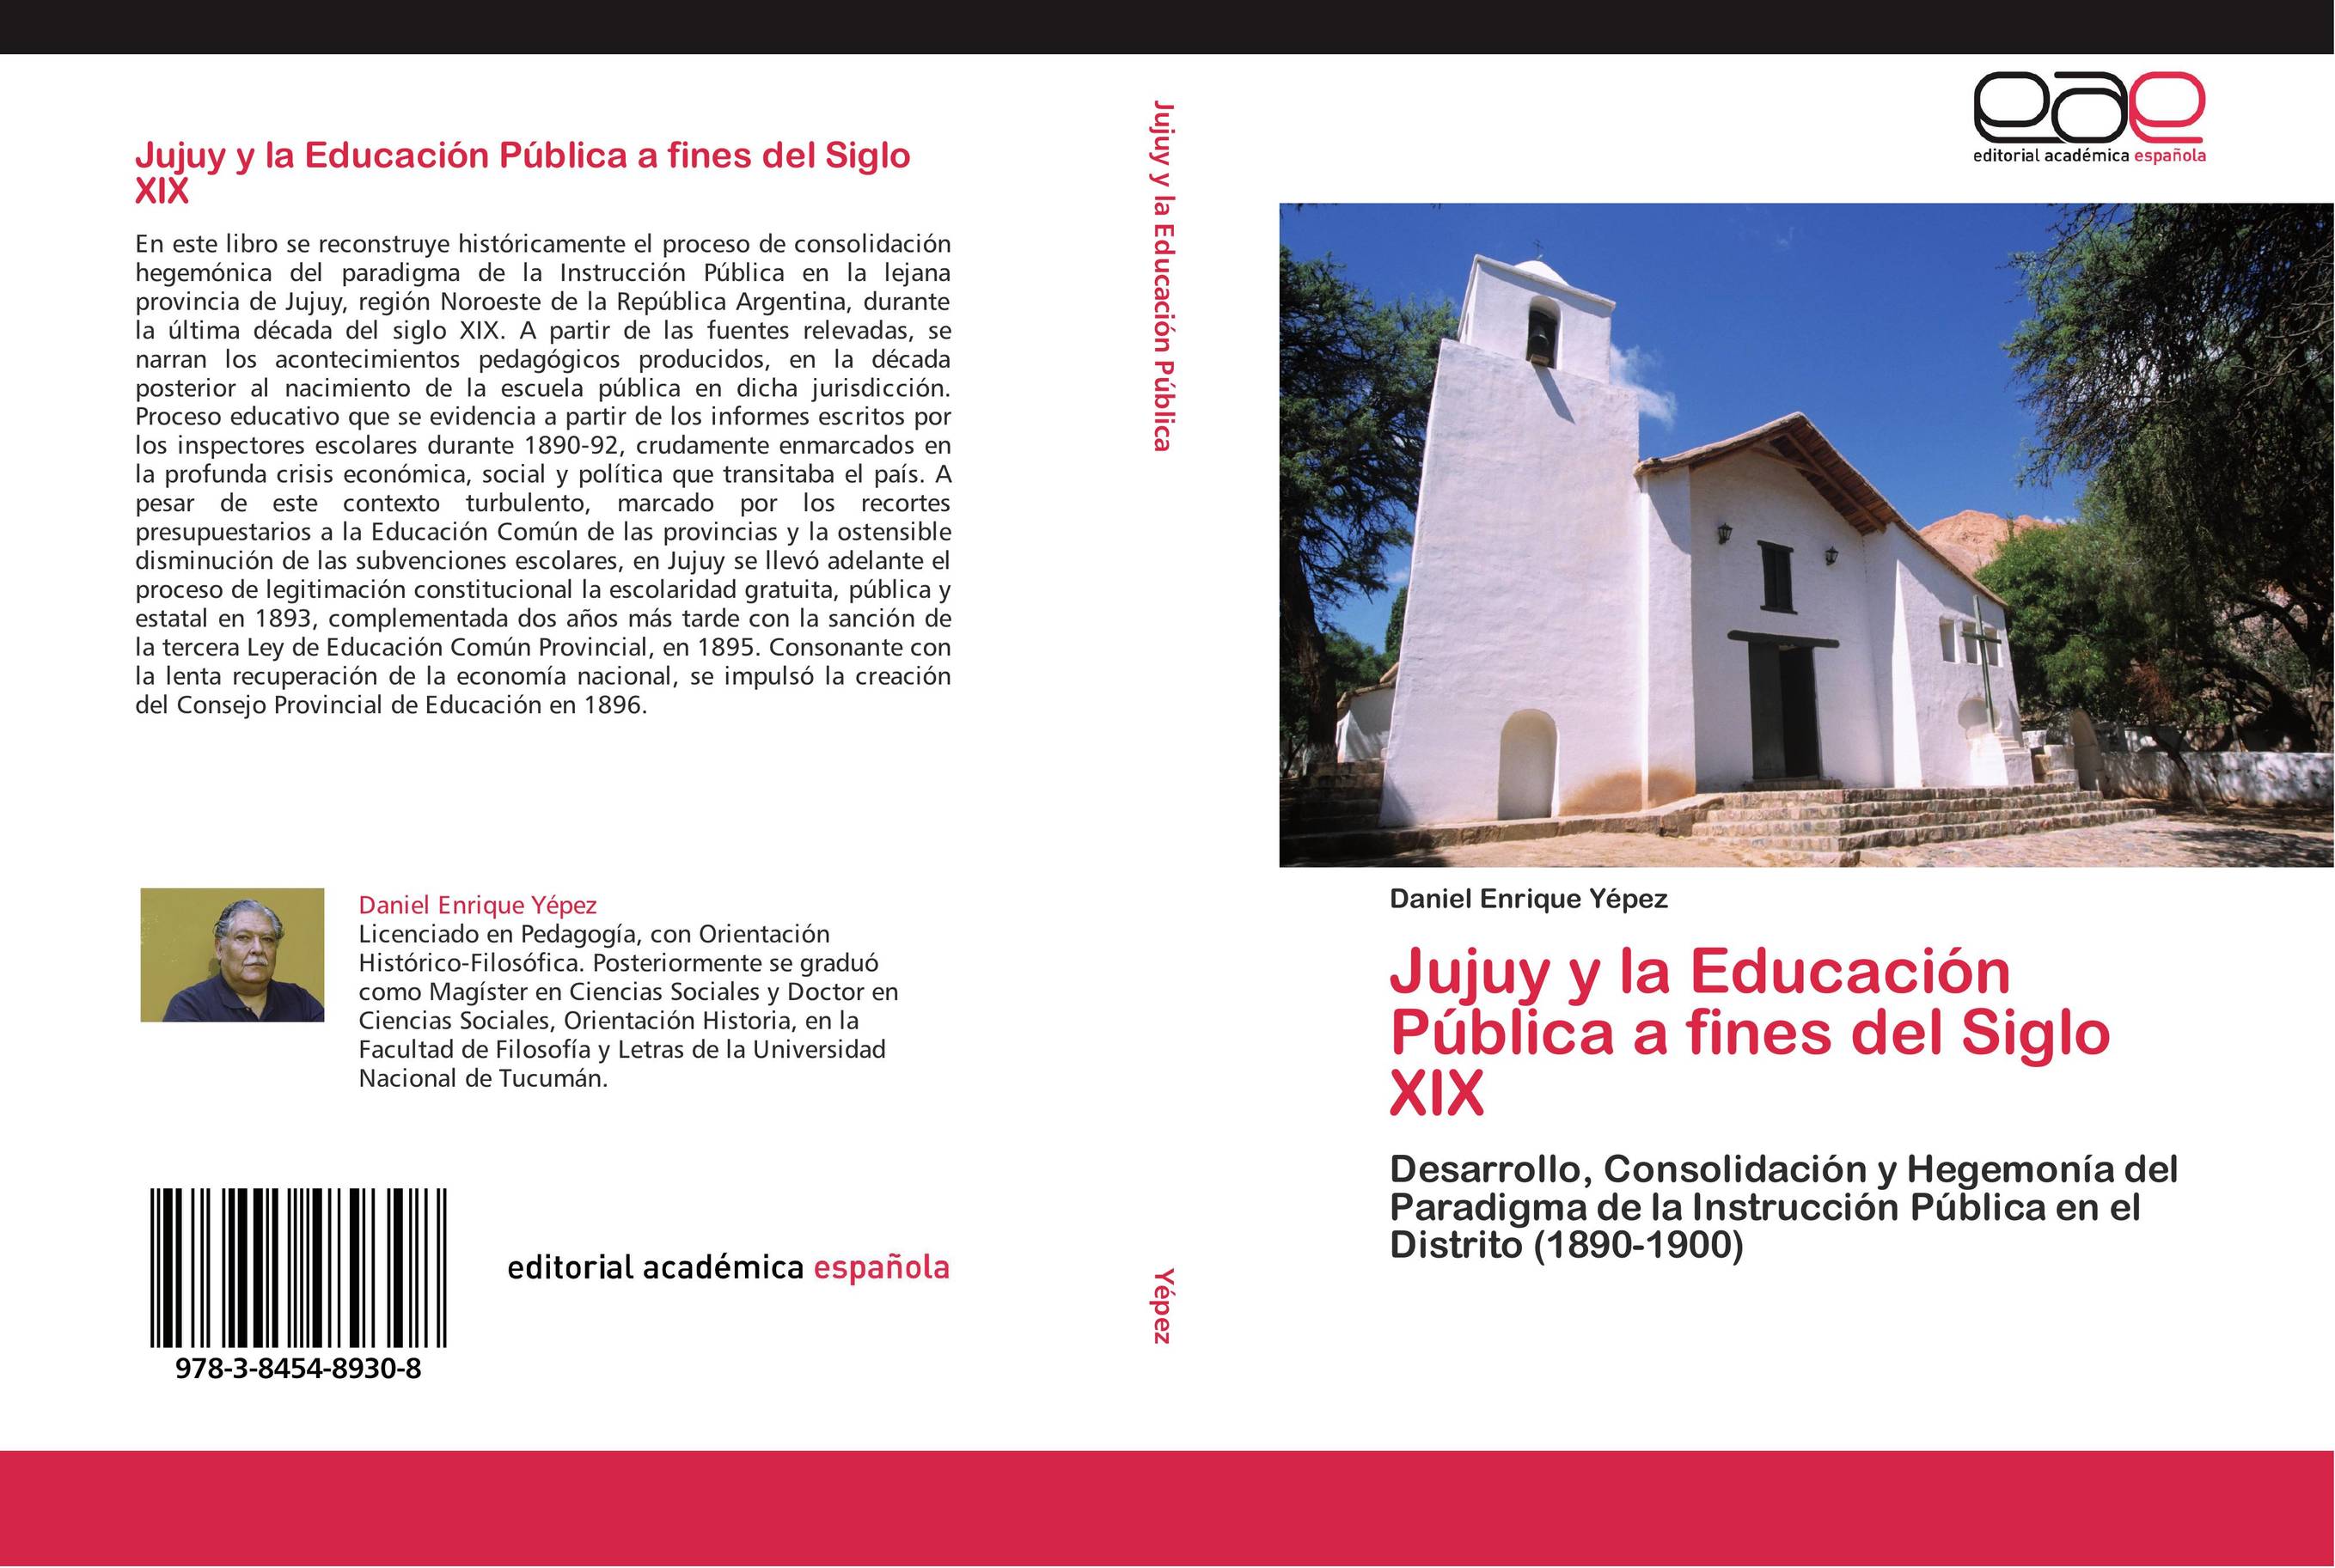 Jujuy y la Educación Pública a fines del Siglo XIX